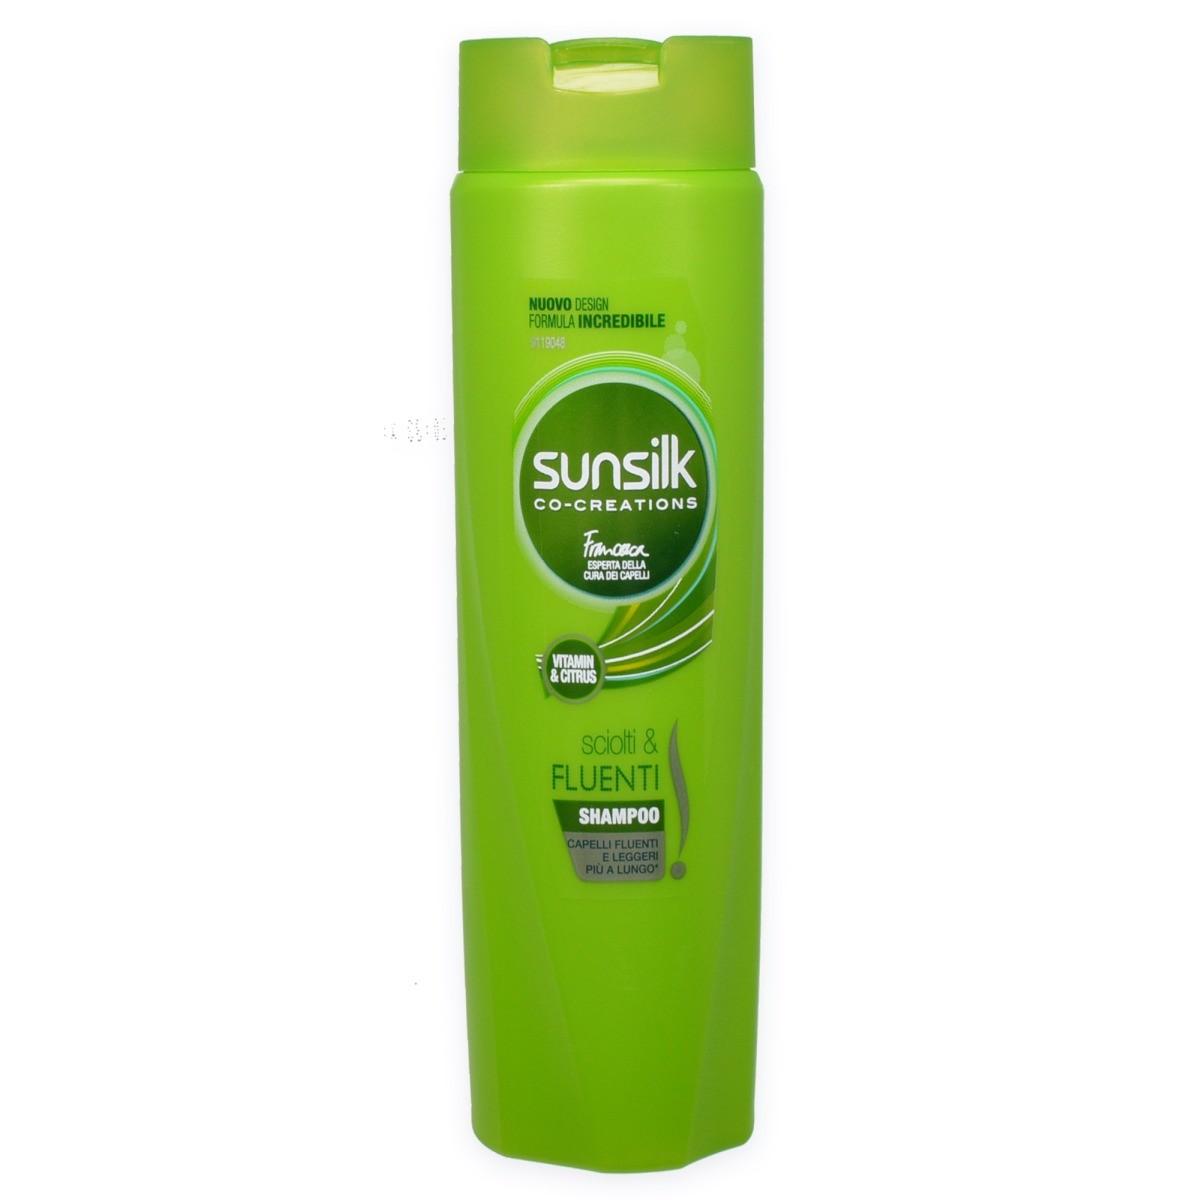 Sunsilk shampoo 250 ml 2 in 1 sciolti e fluenti